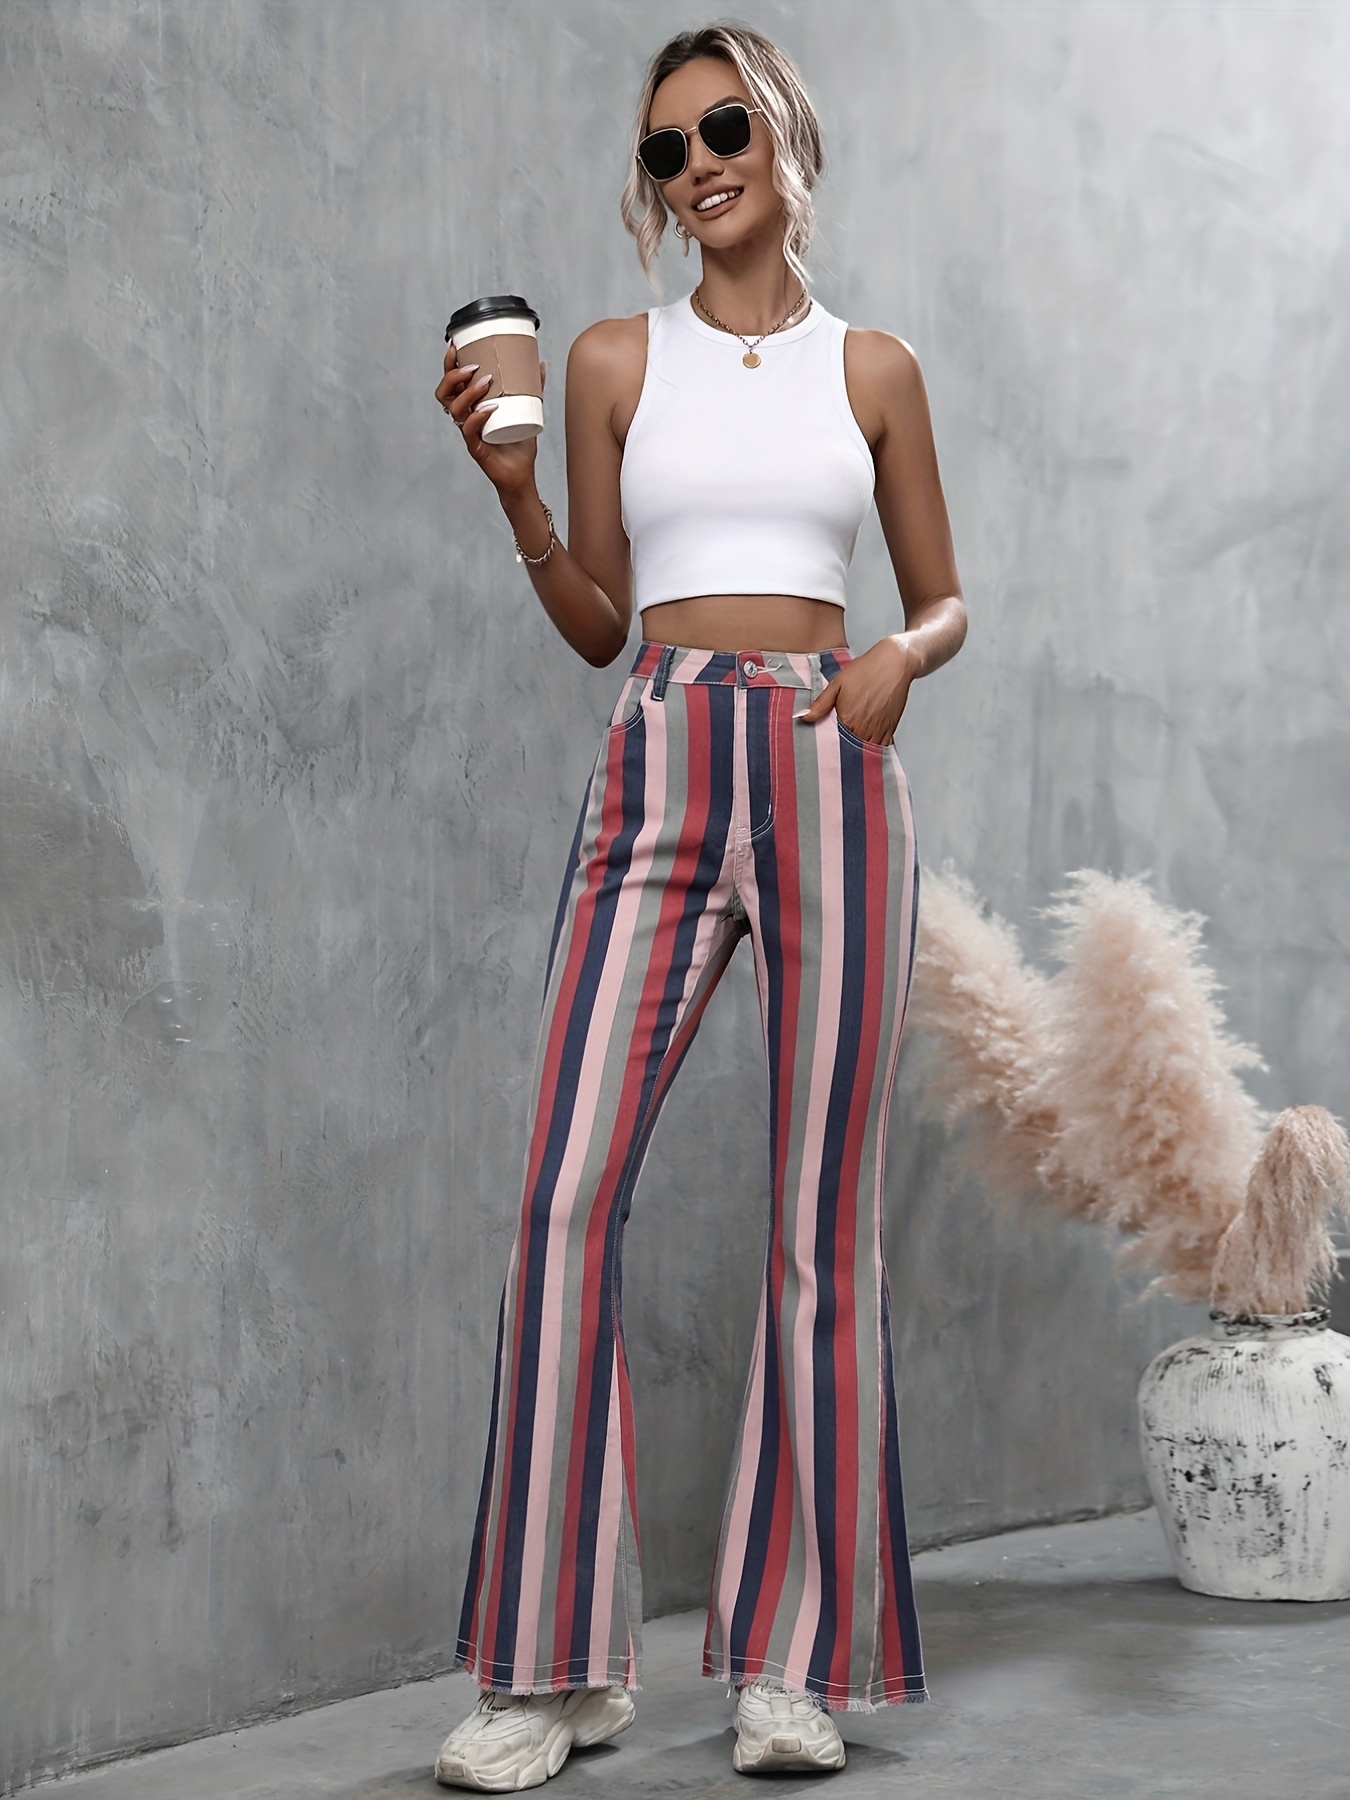 Fashion High Waist Slim Fit Jeans Versatile Elastic Flare Pants Multicolor  Pants